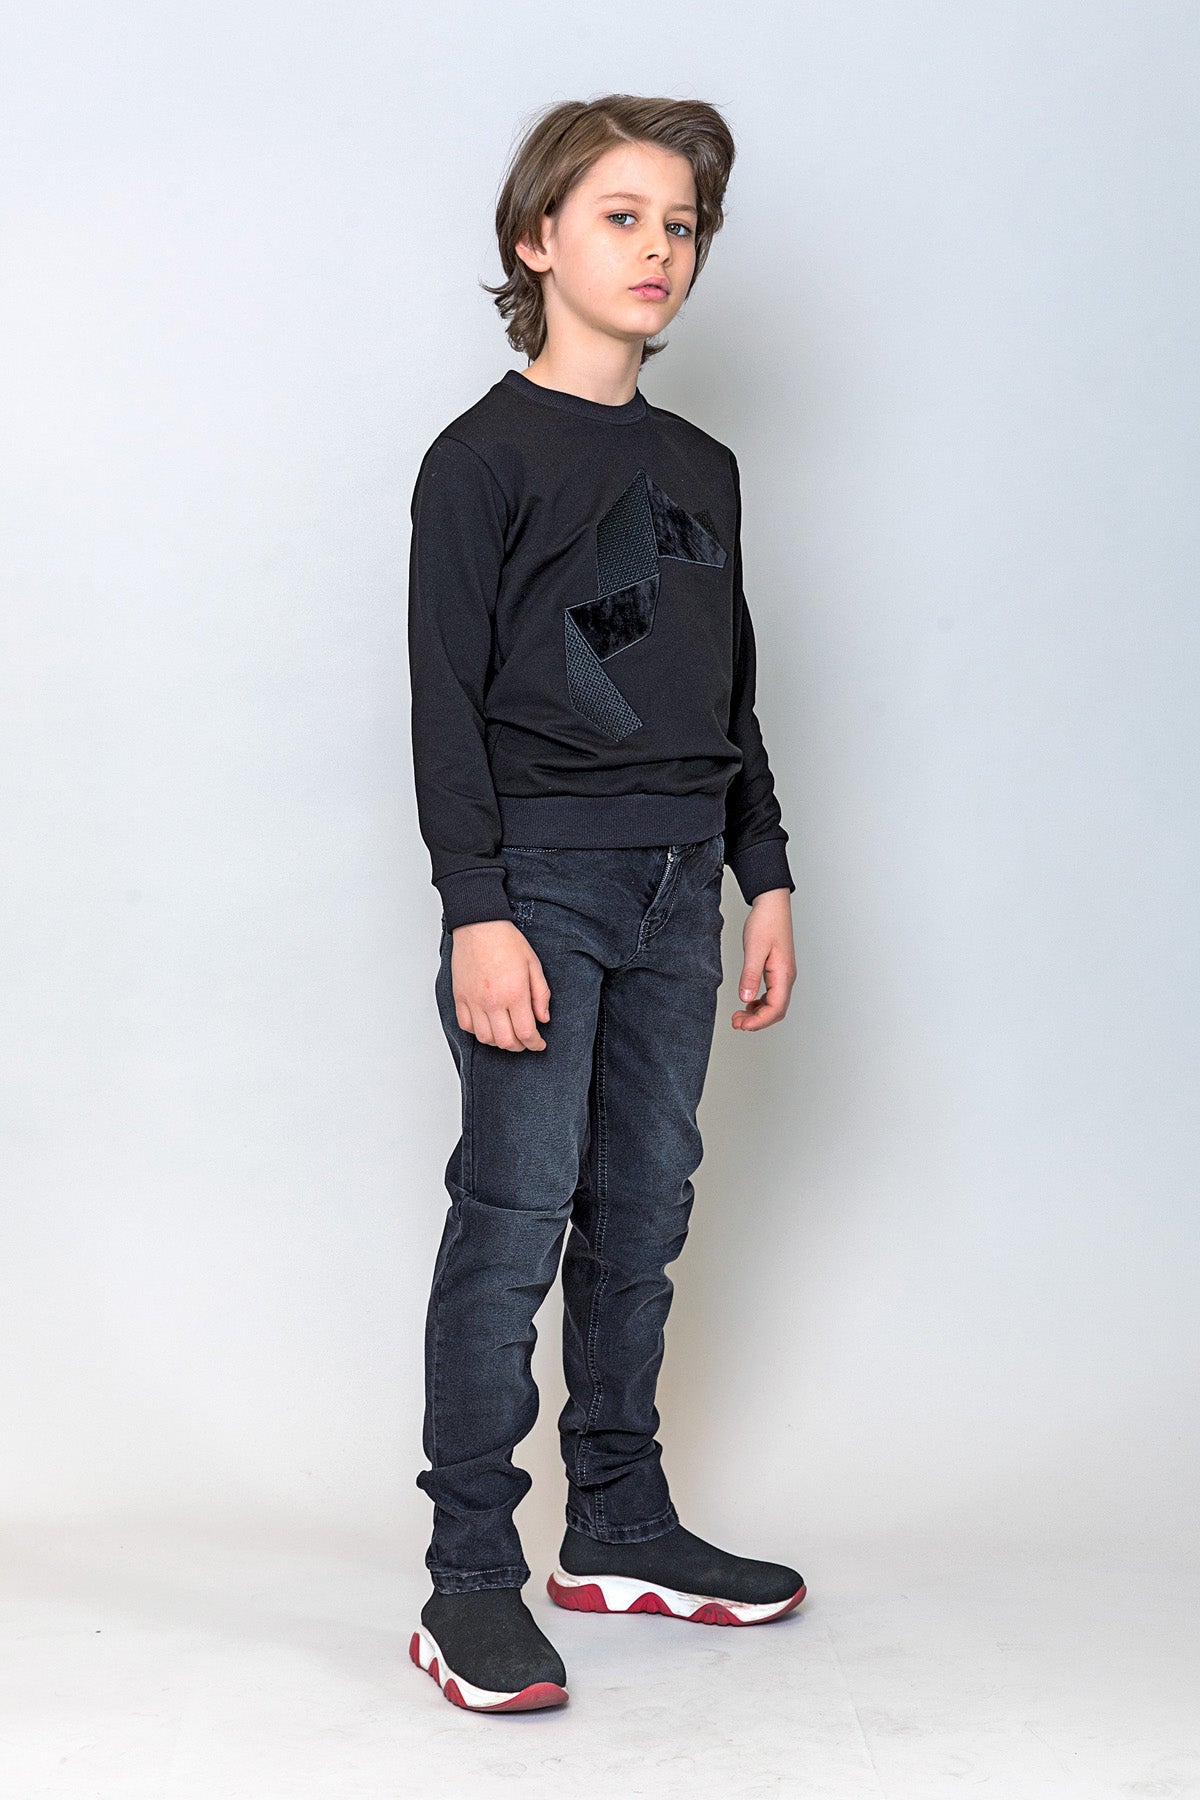 InCity Kids Erkek Çocuk Nakışlı ve Peluşlu Geometrik Desenli Sweatshirt